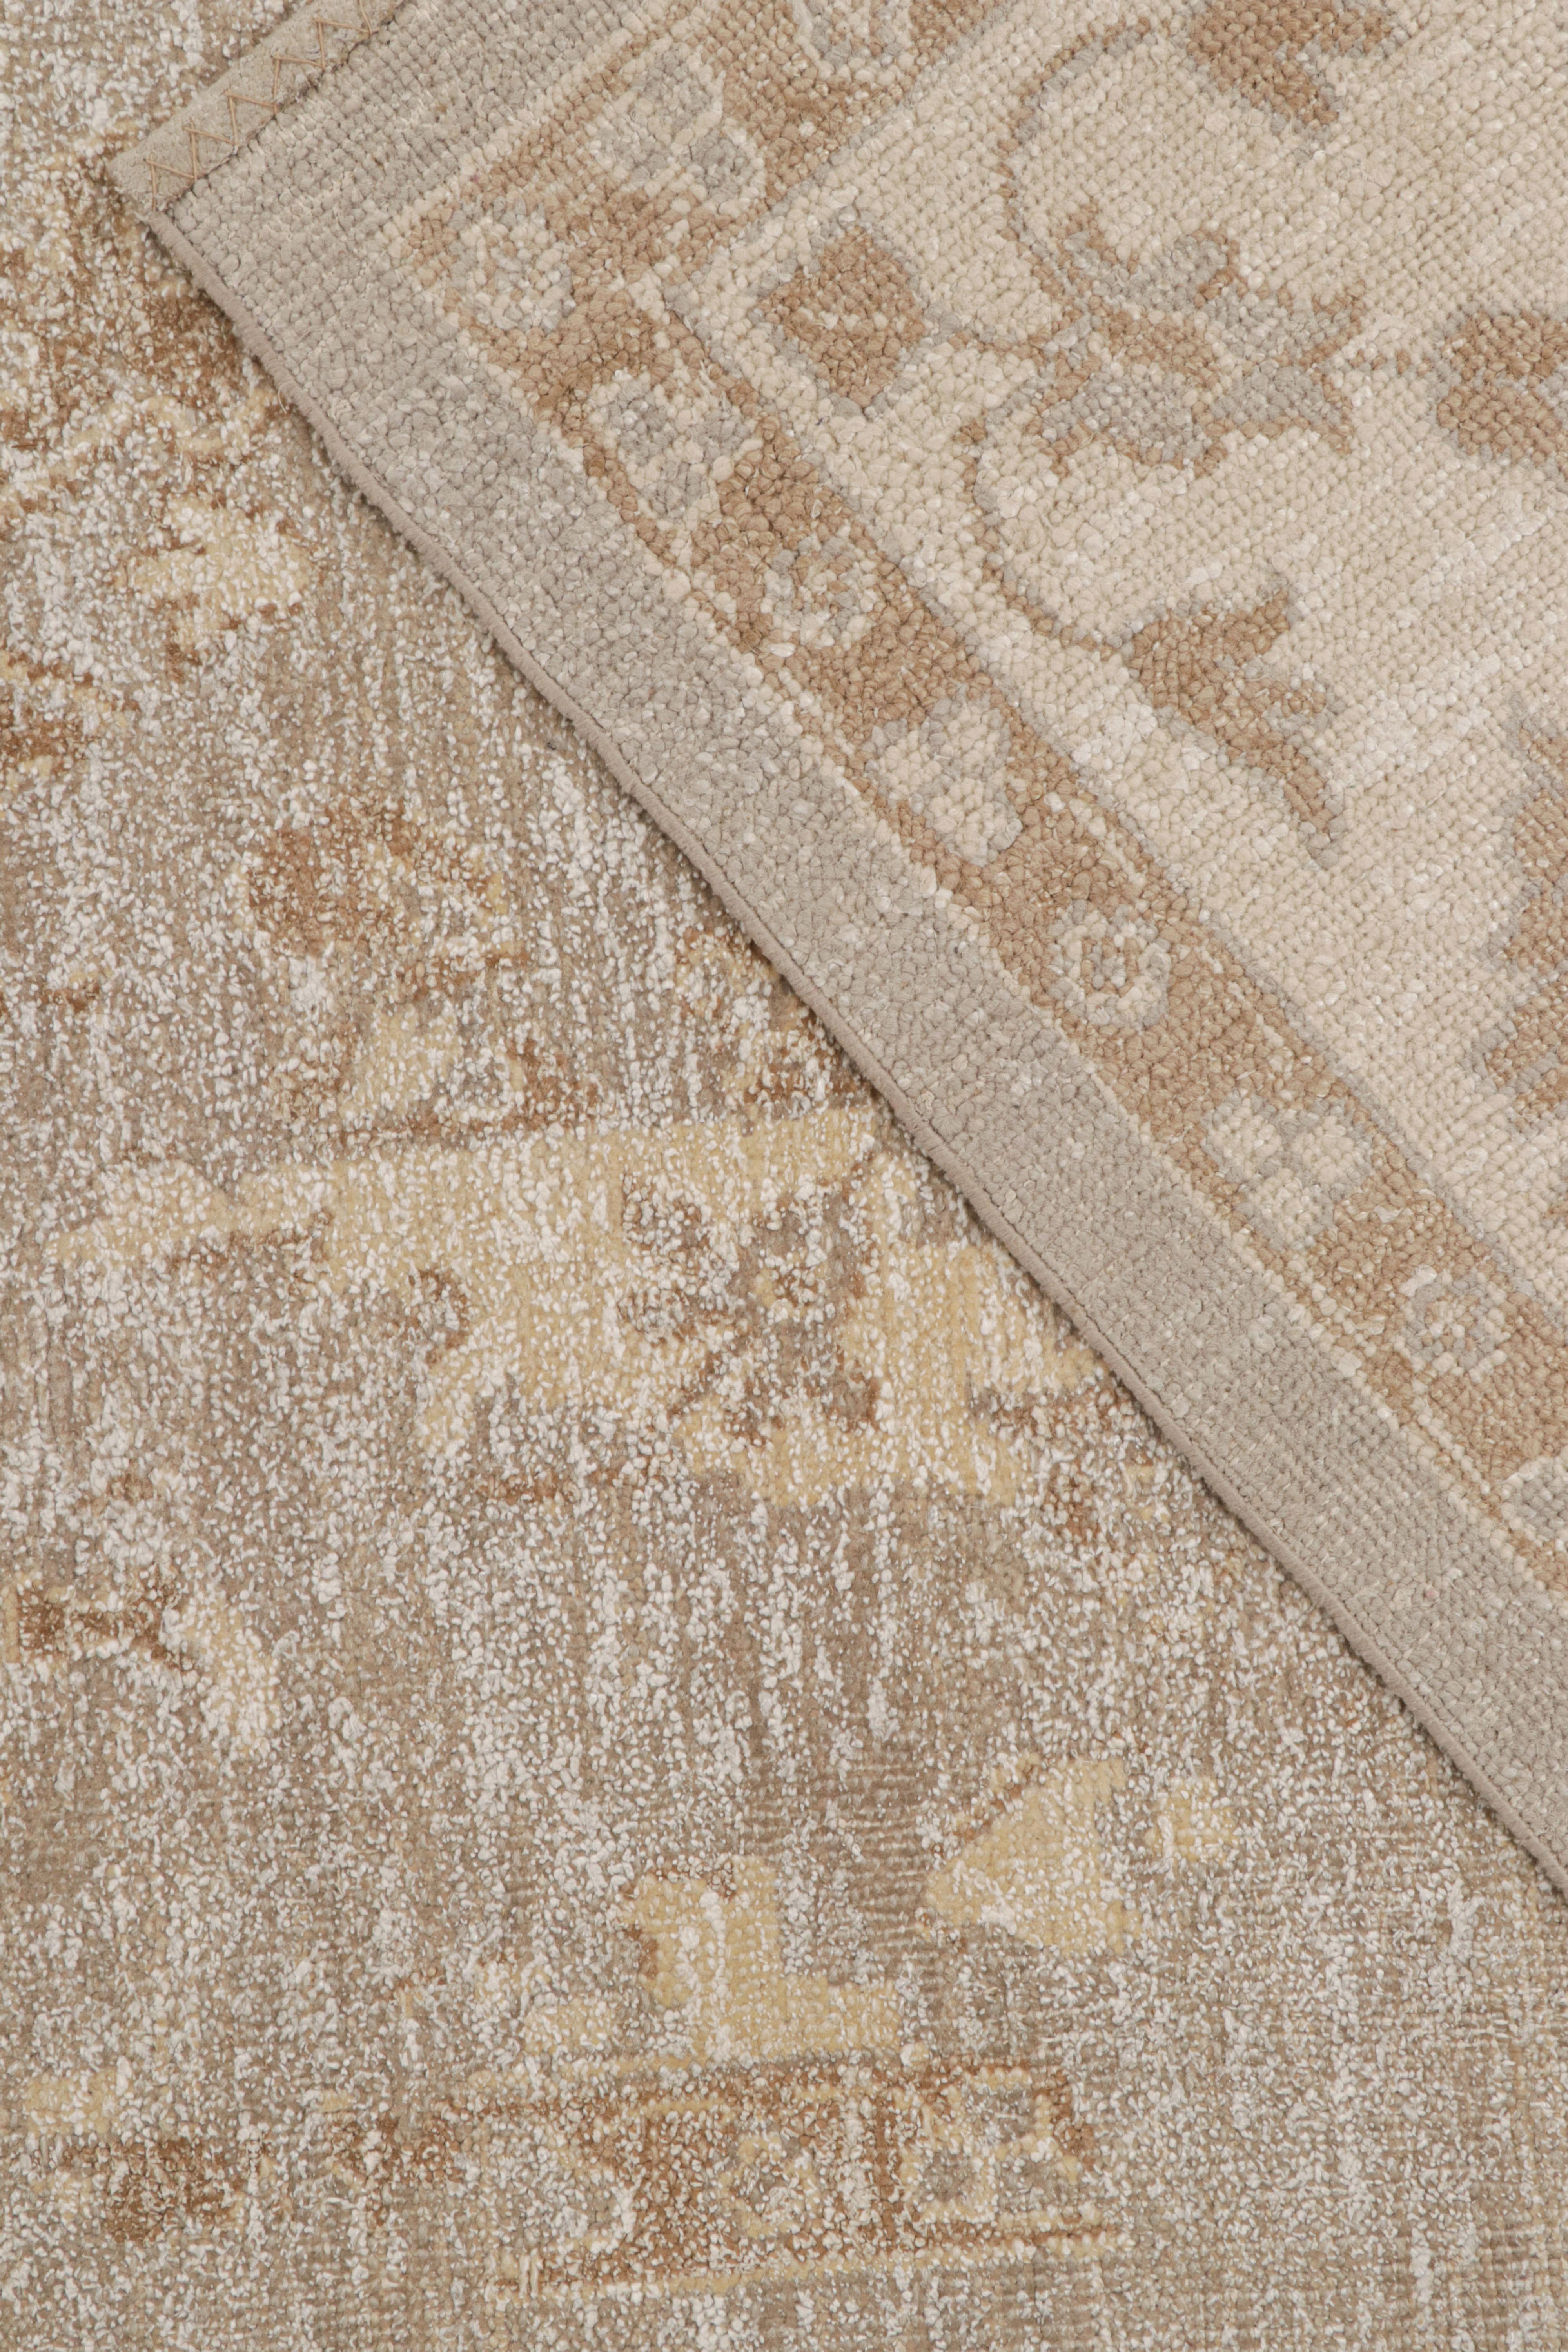 Rug & Kilim's Oushak Style Teppich in Beige-Braun & Weiß Geometrisch gemustert (Wolle) im Angebot